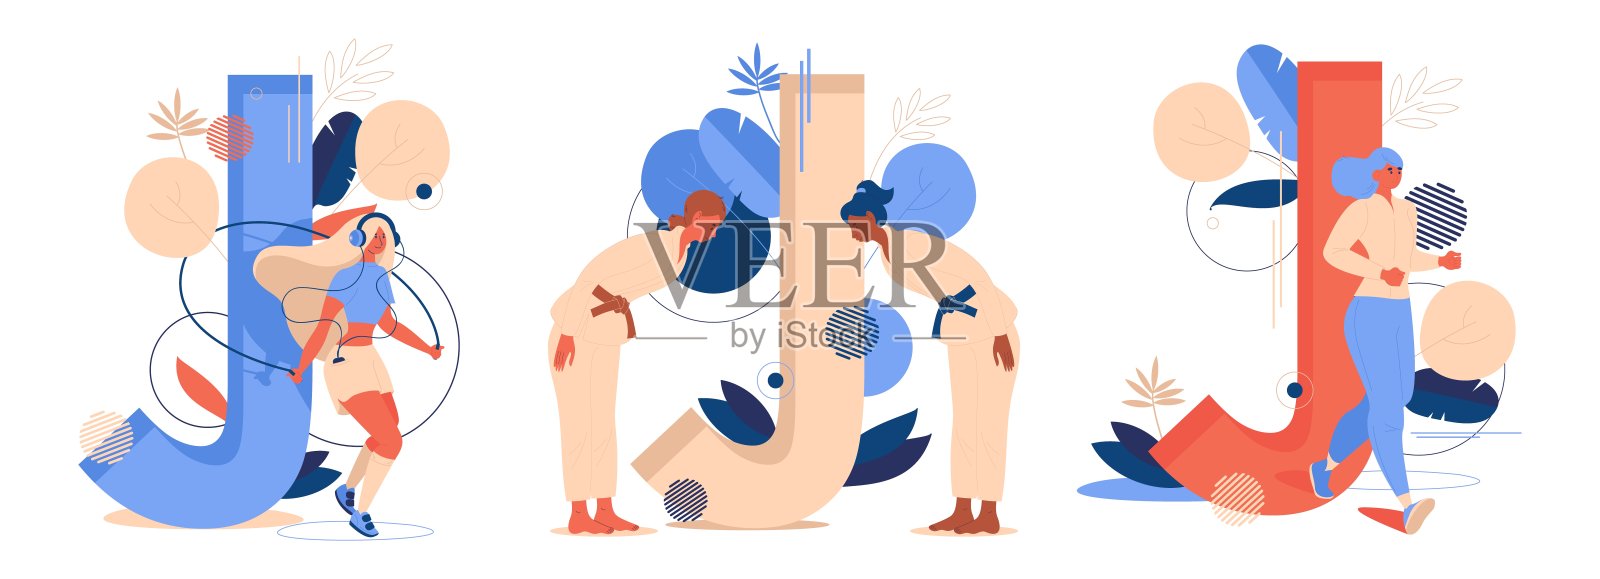 概念插图与大字母J和运动妇女孤立在白色。跳绳、柔道或柔术和慢跑的形象用活泼的蓝色和橙色画出来设计元素图片